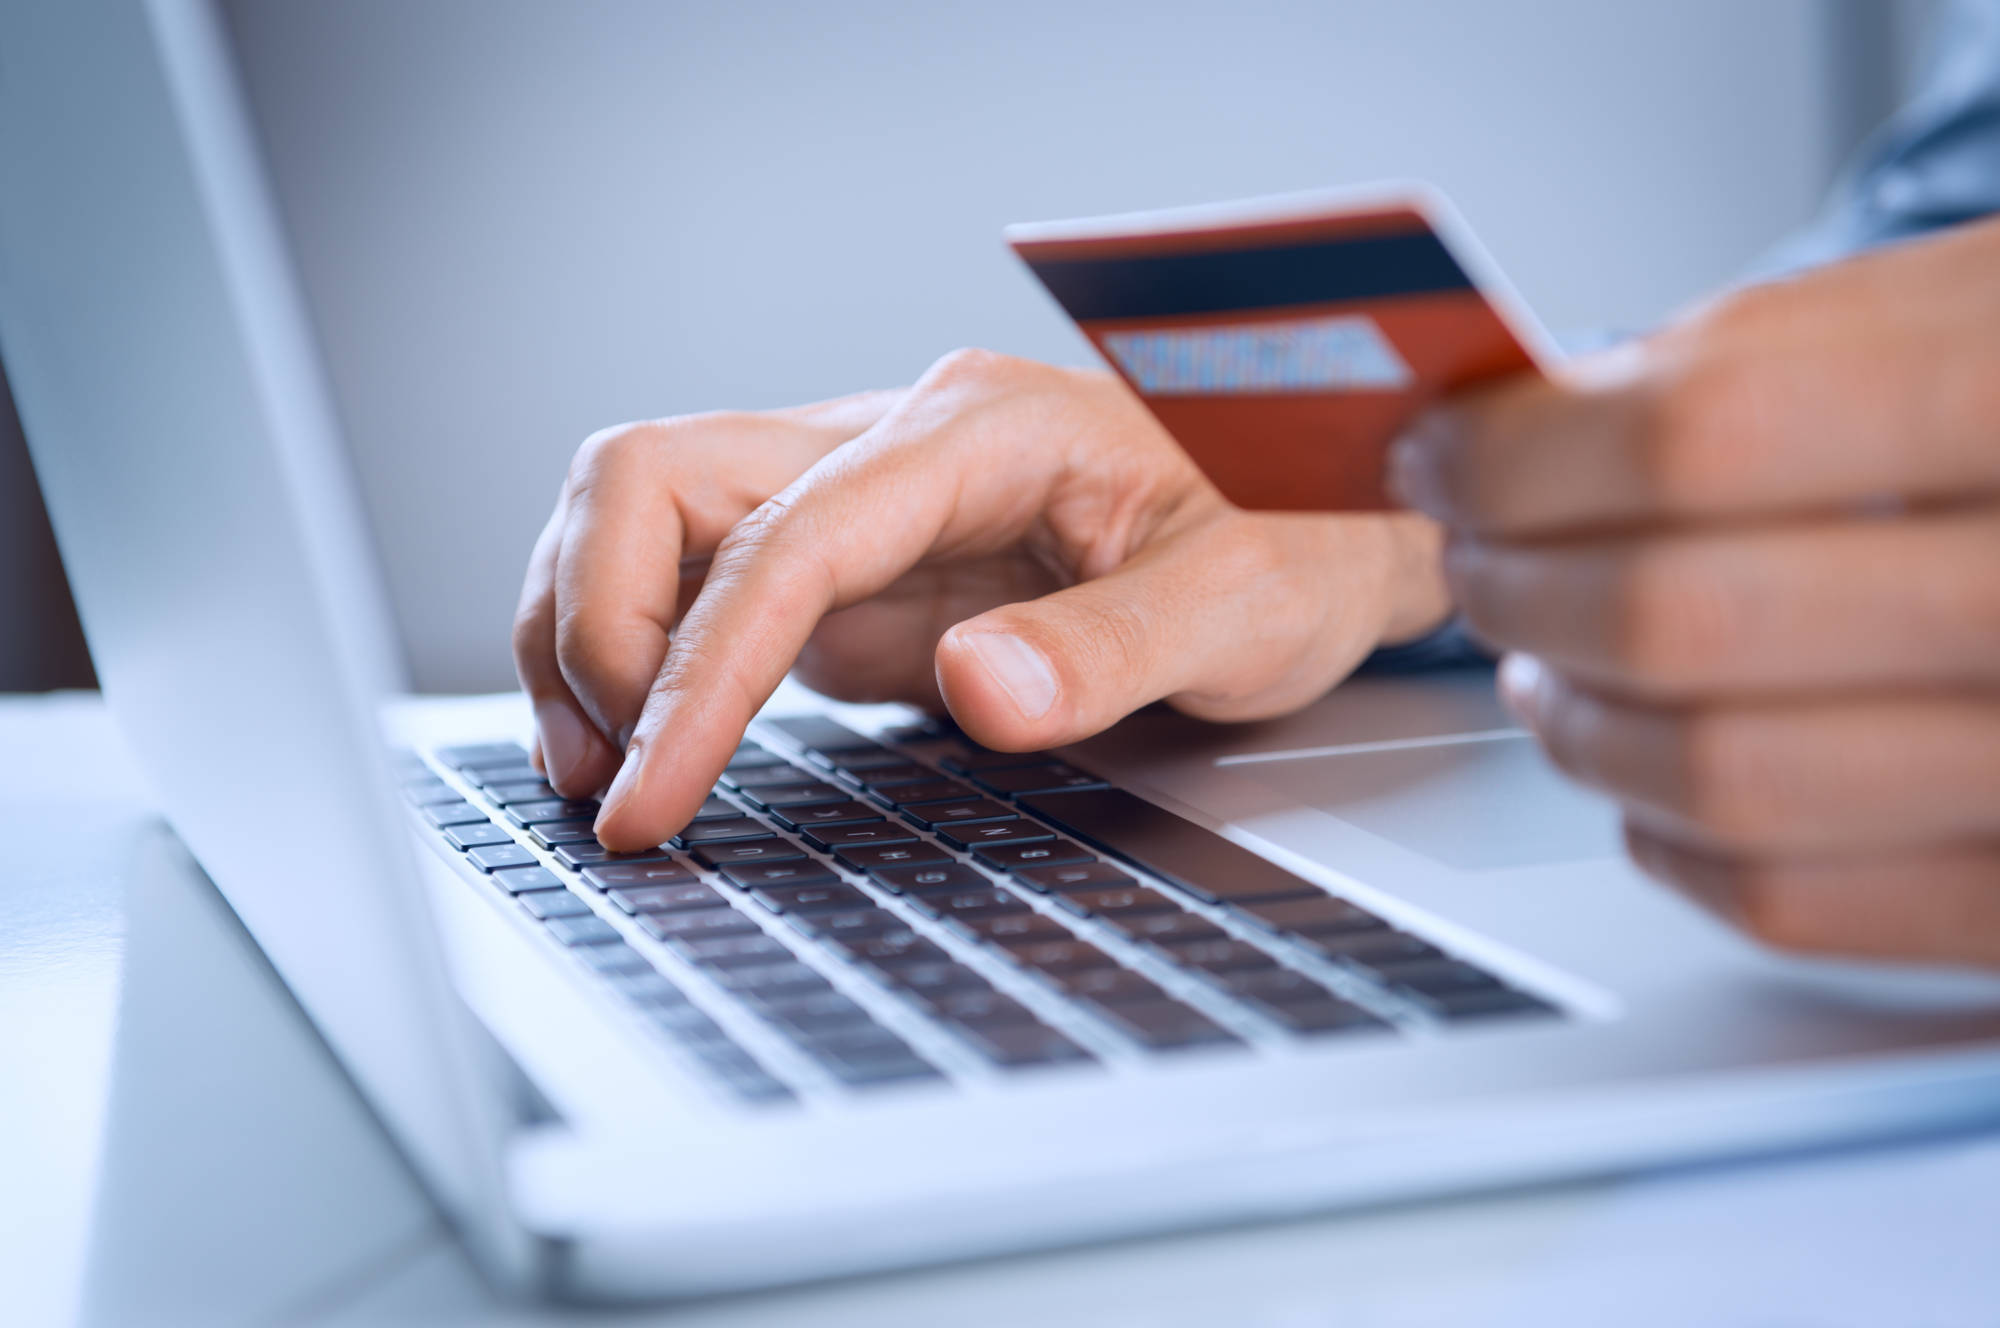 Для оплаты через Сбер требуют сертификат Минцифры. Как теперь проводить платежи онлайн?